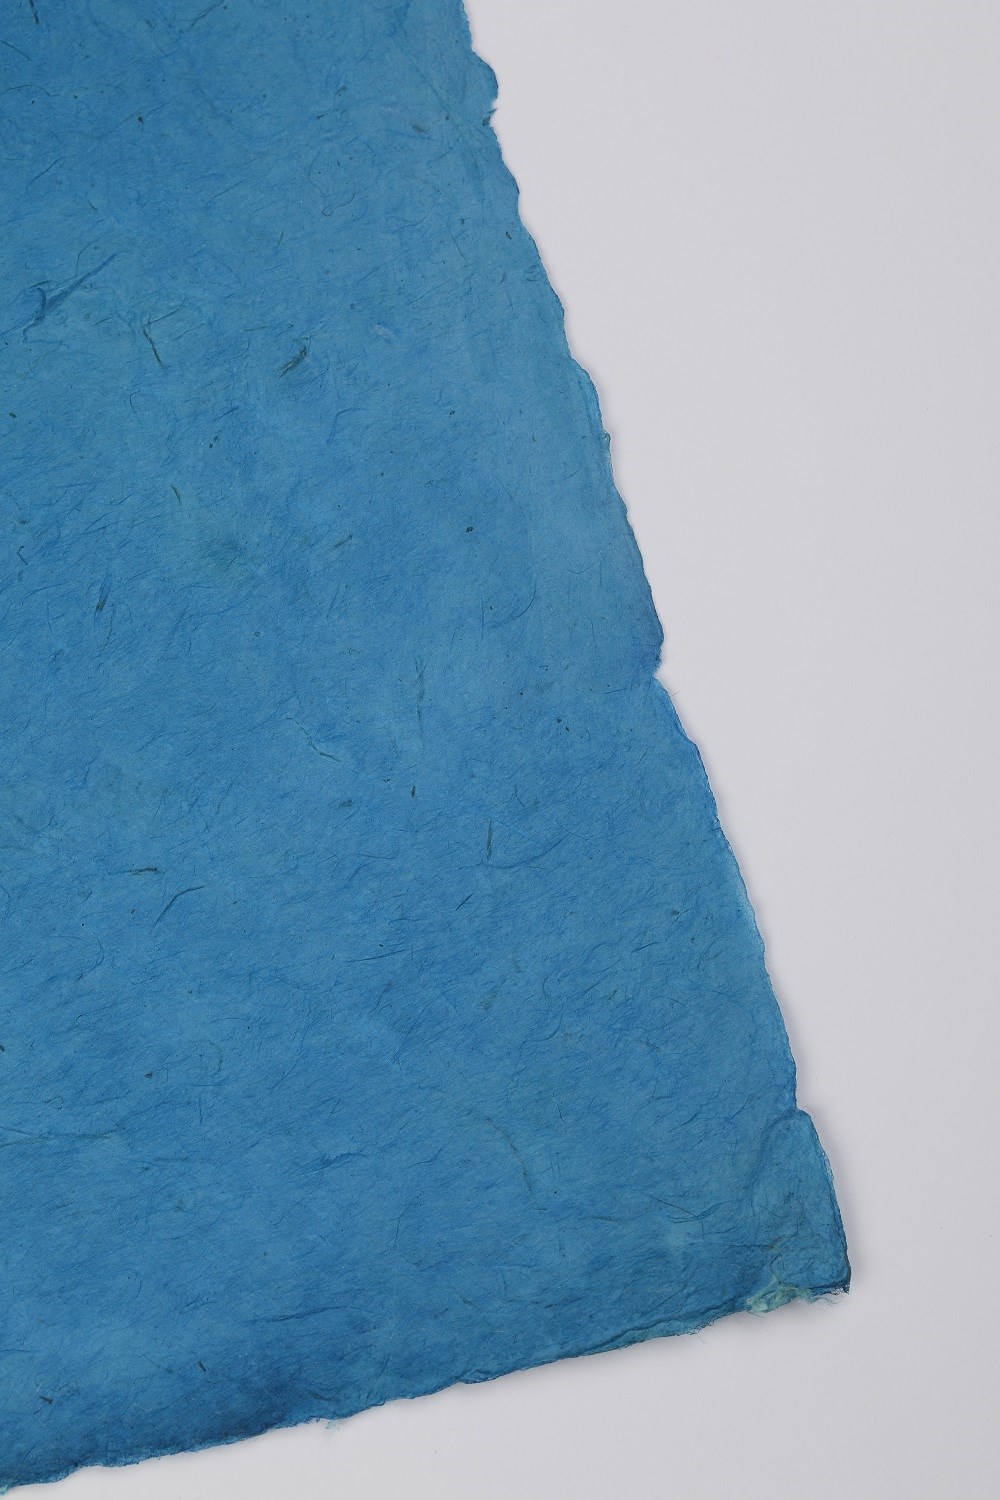 Tiryakiart El Yapımı Asitsiz Nepal Kağıdı 45 Dove Blue